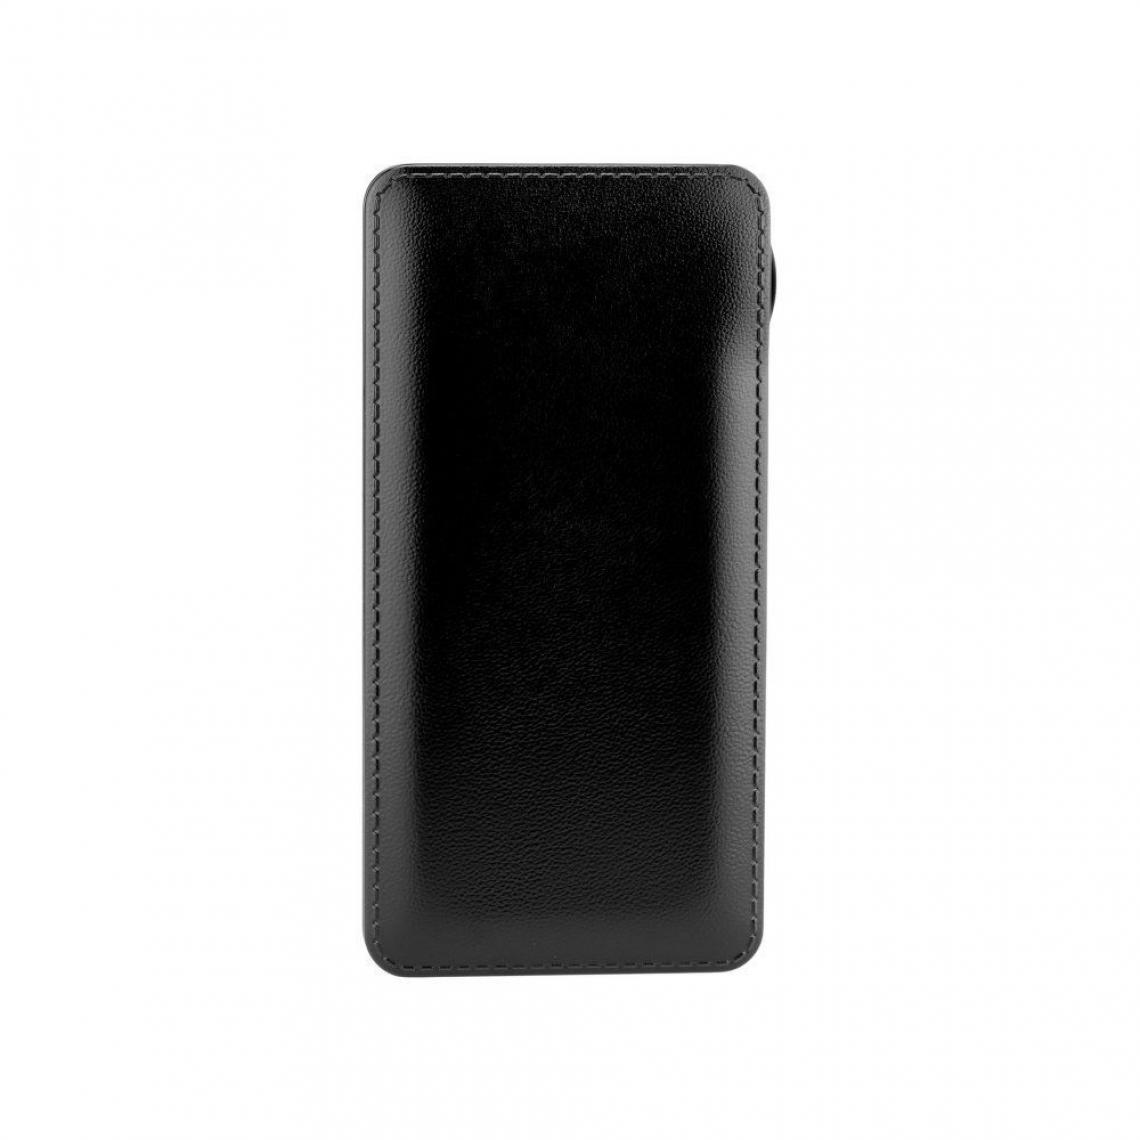 Ozzzo - Chargeur batterie externe 30000 mAh powerbank ozzzo noir pour Teclast X10 Plus - Autres accessoires smartphone